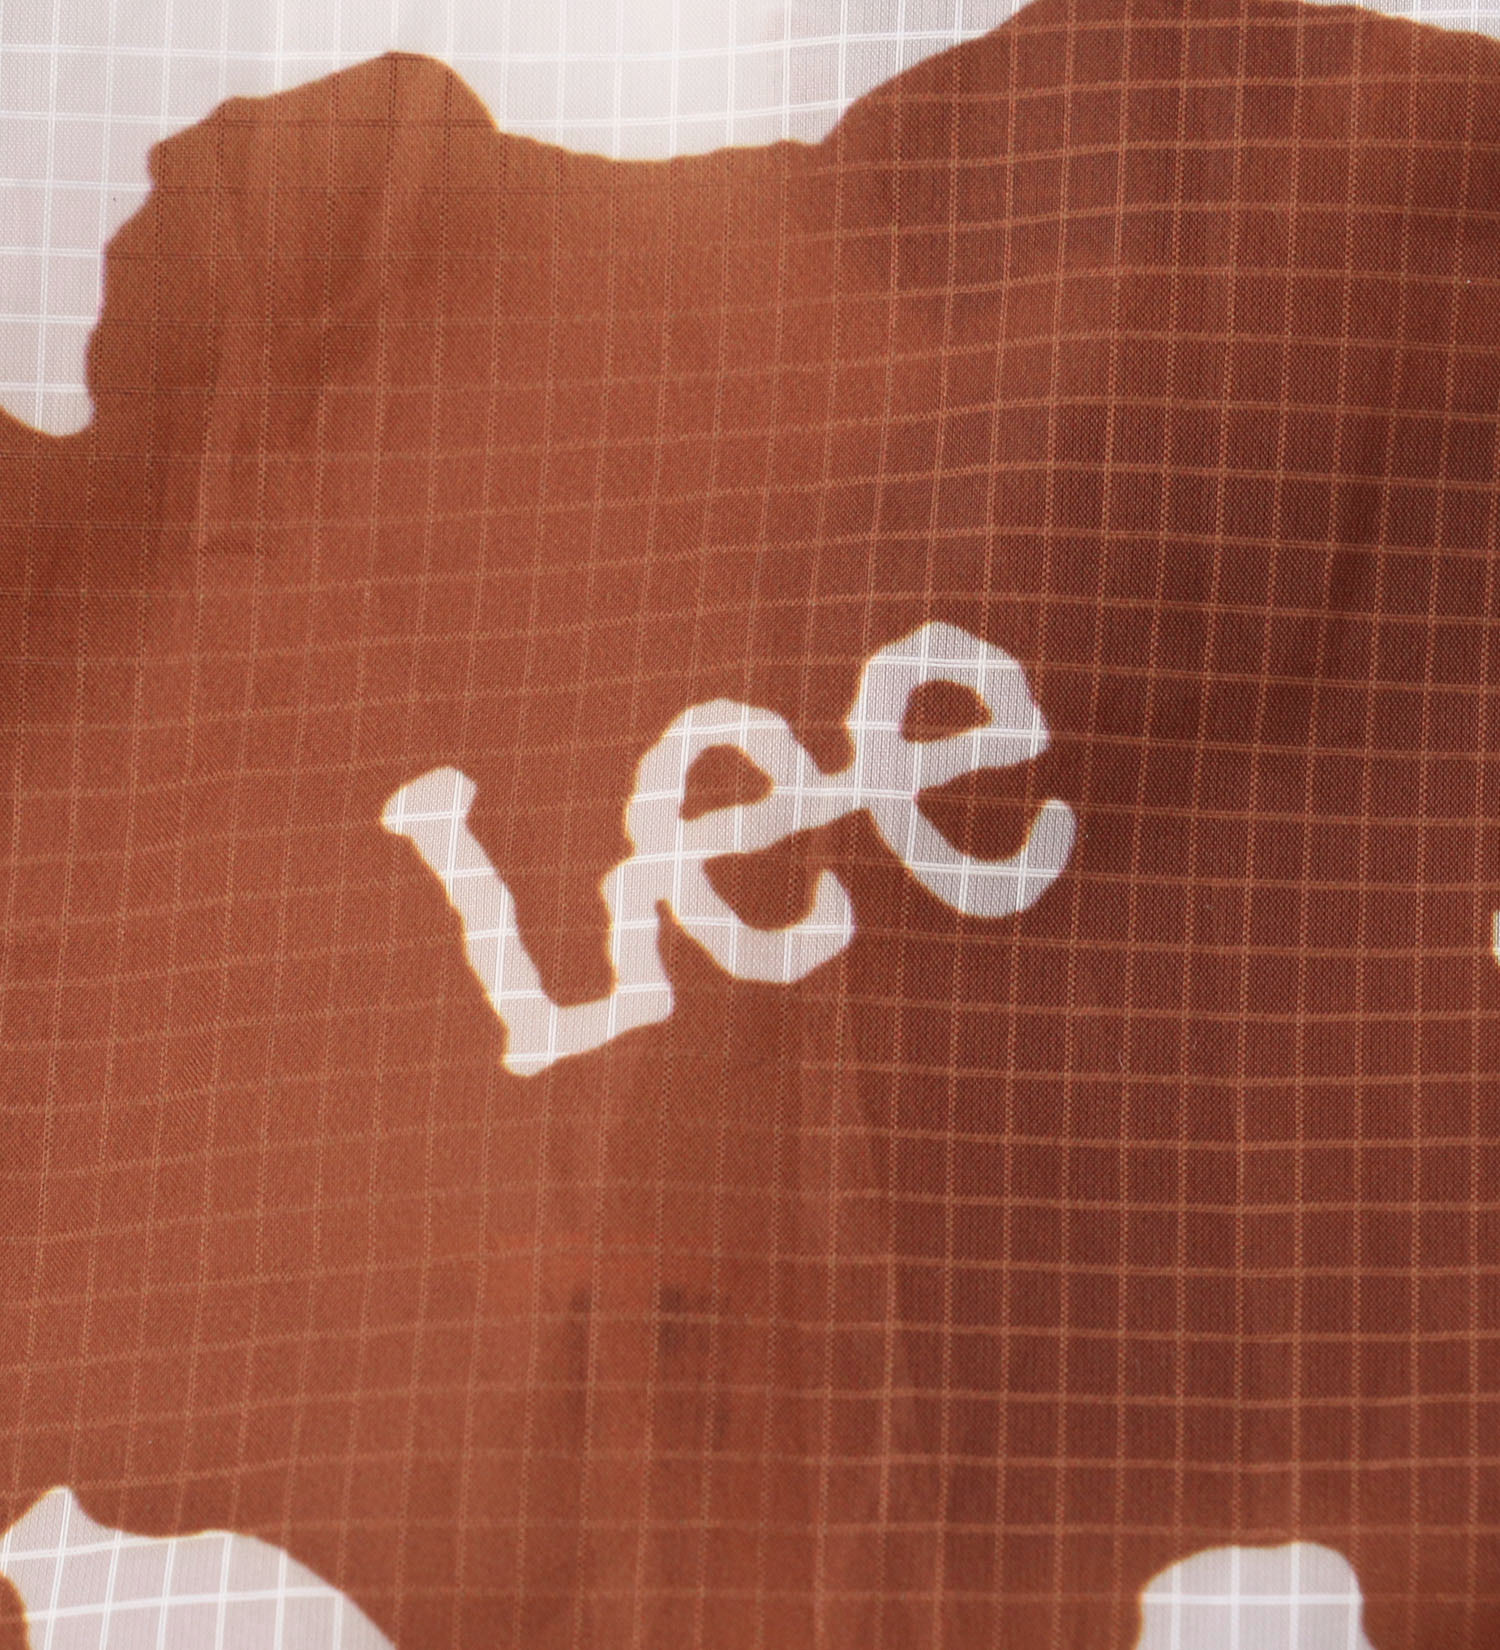 Lee(リー)のエコバッグ/ミニトート|バッグ/エコバッグ/サブバッグ/レディース|ブラウン